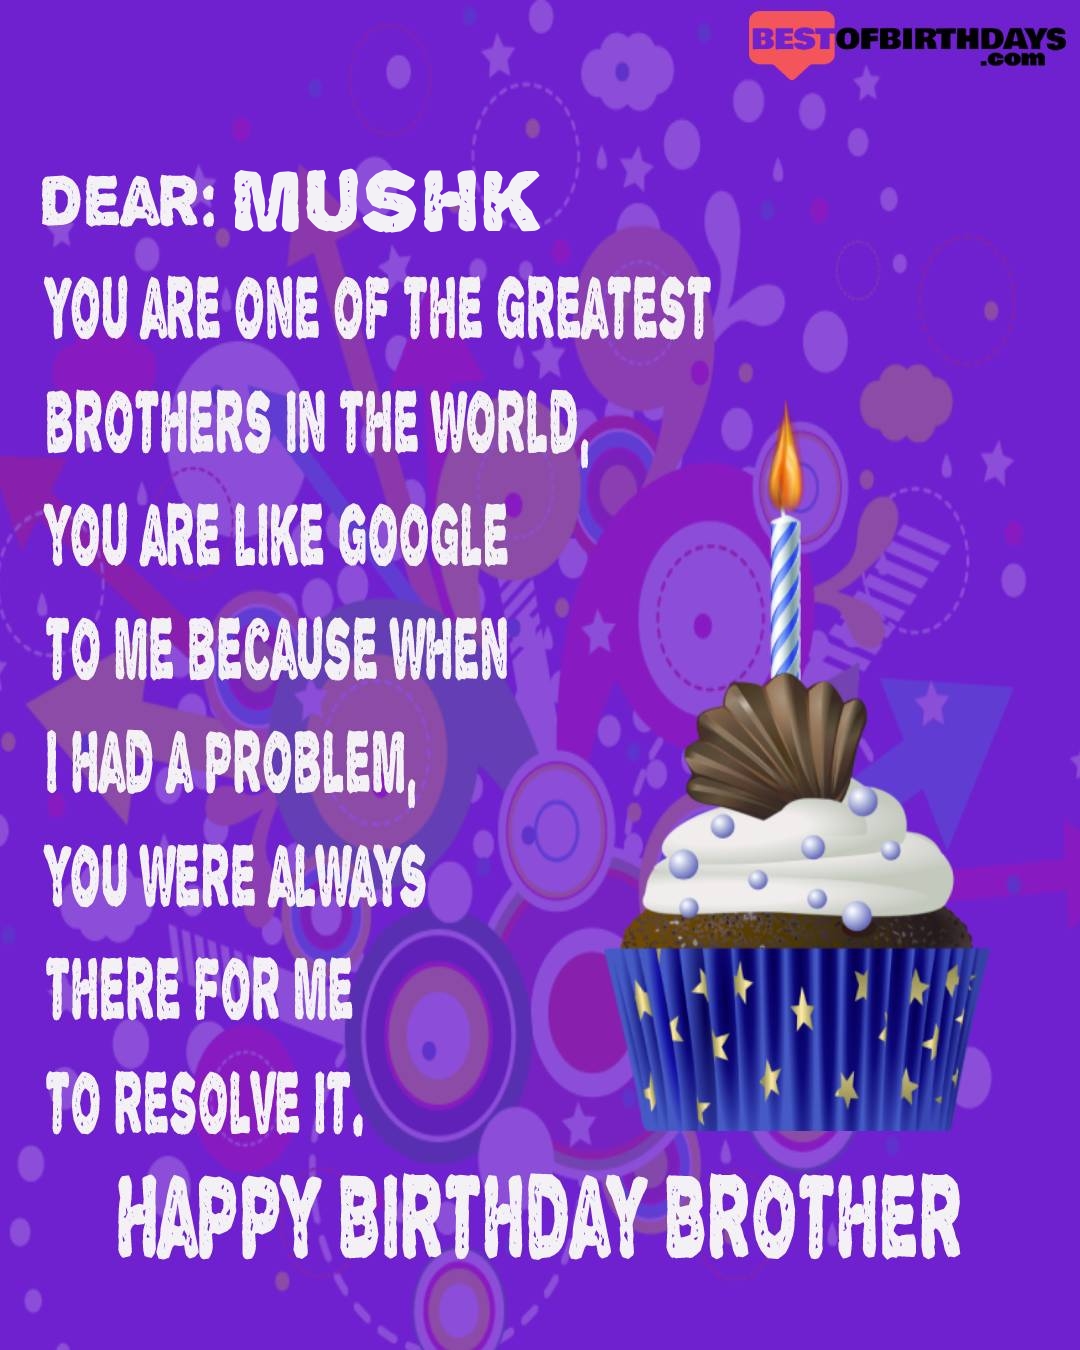 Happy birthday mushk bhai brother bro